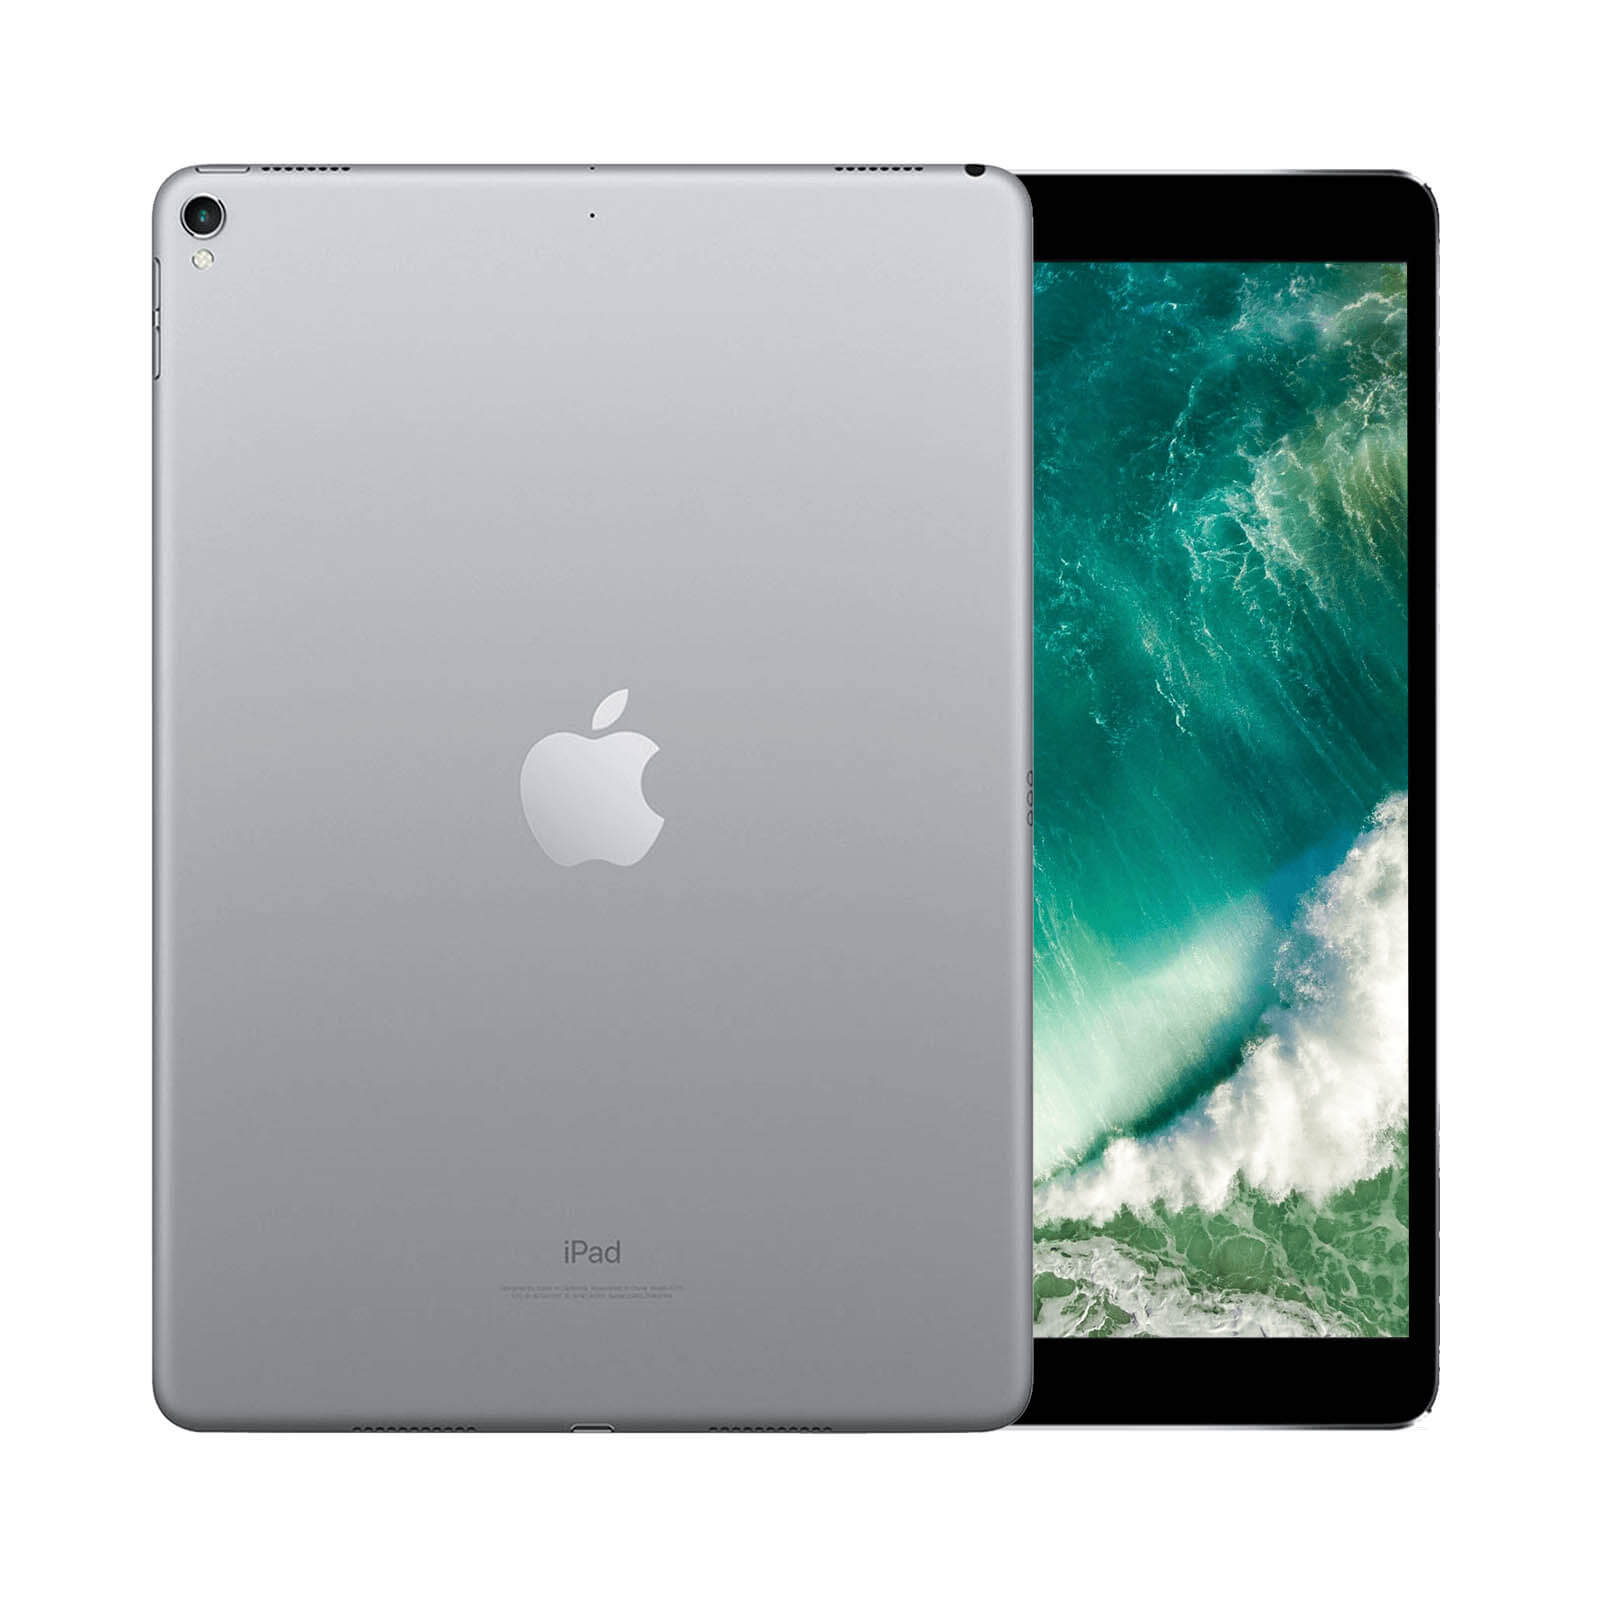 iPad Pro 10.5 Inch 64GB Silver Very Good - WiFi